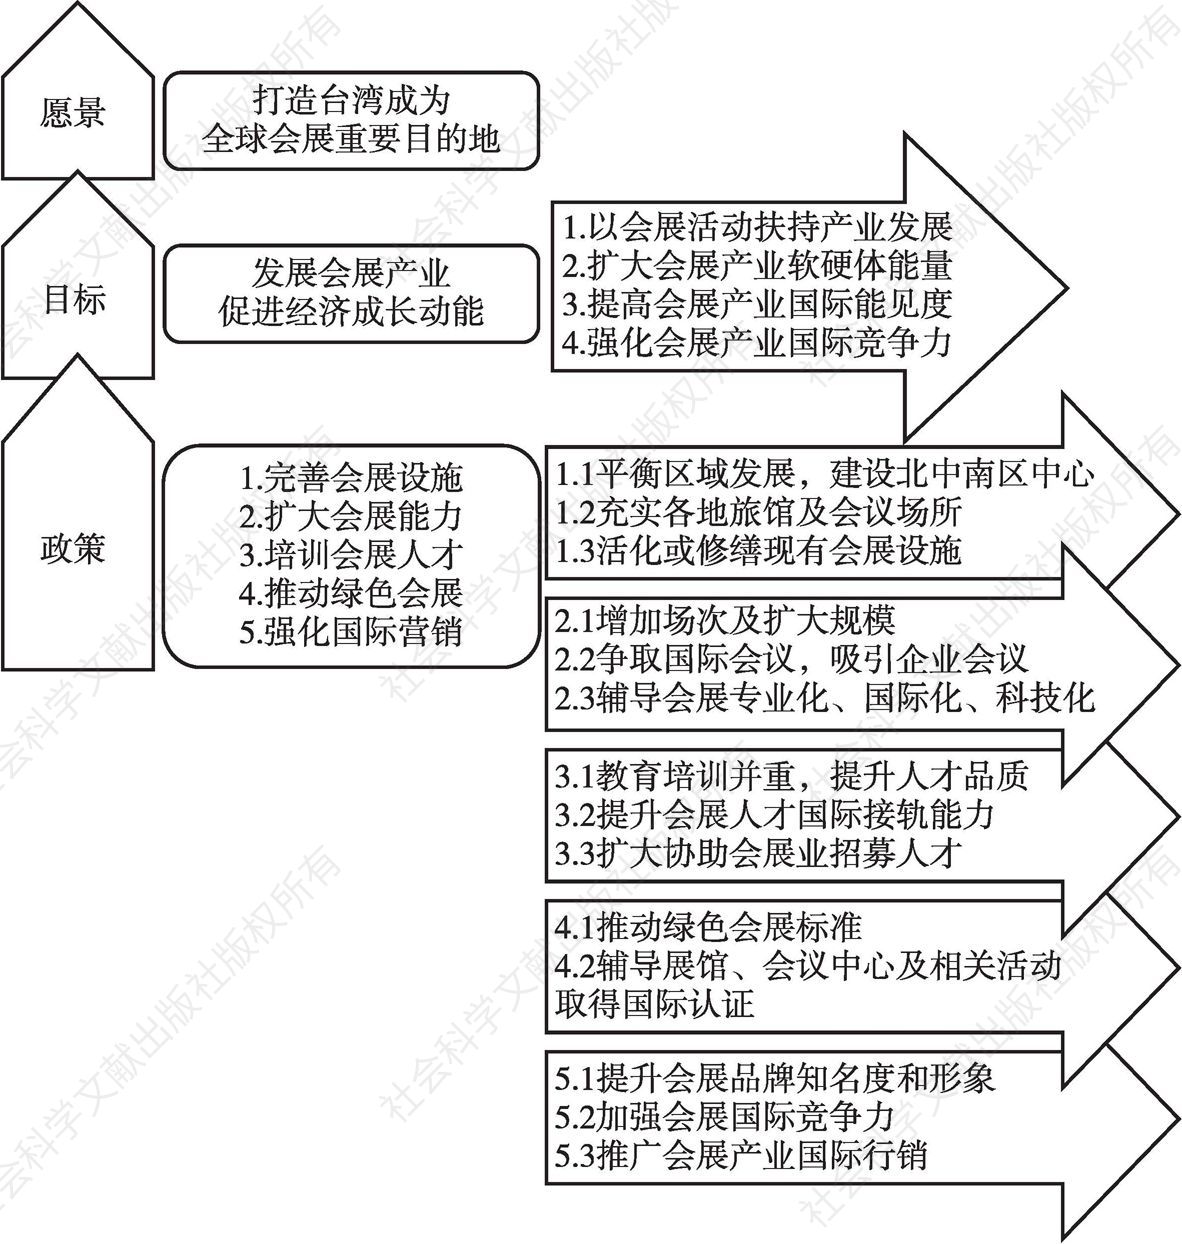 图1 台湾会展产业政策蓝图